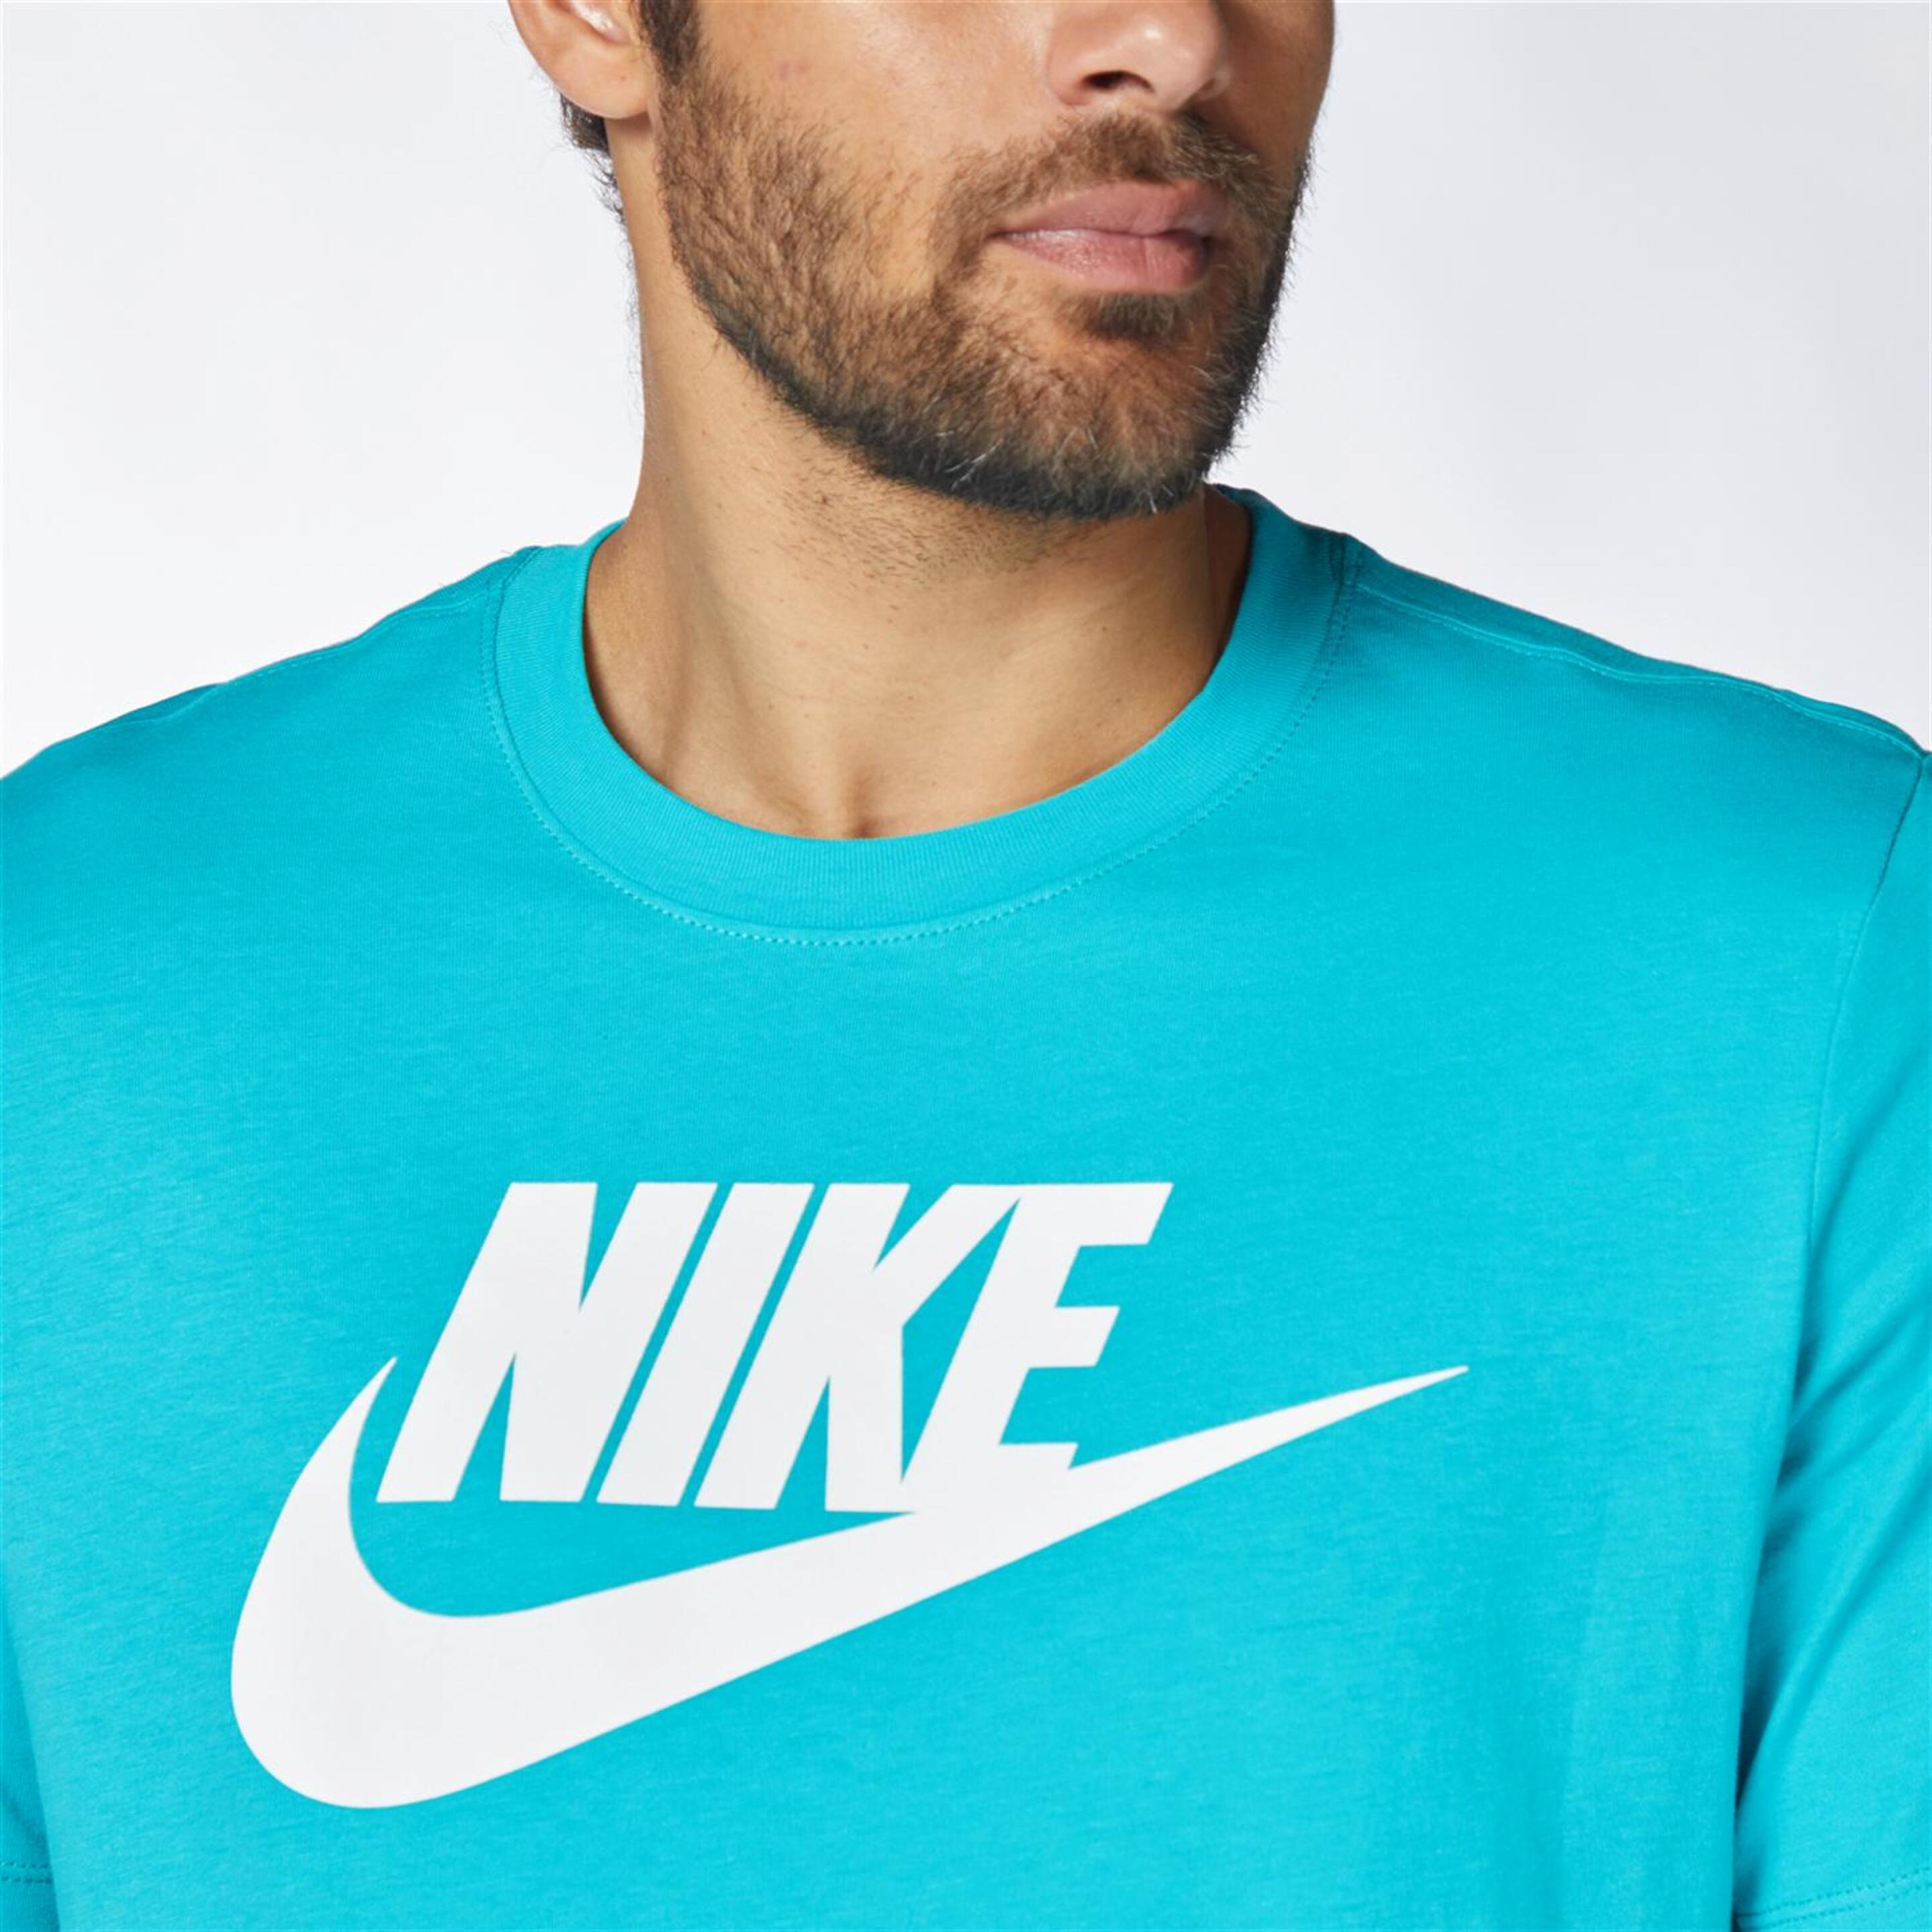 Nike Club - Turquesa - Camiseta Hombre